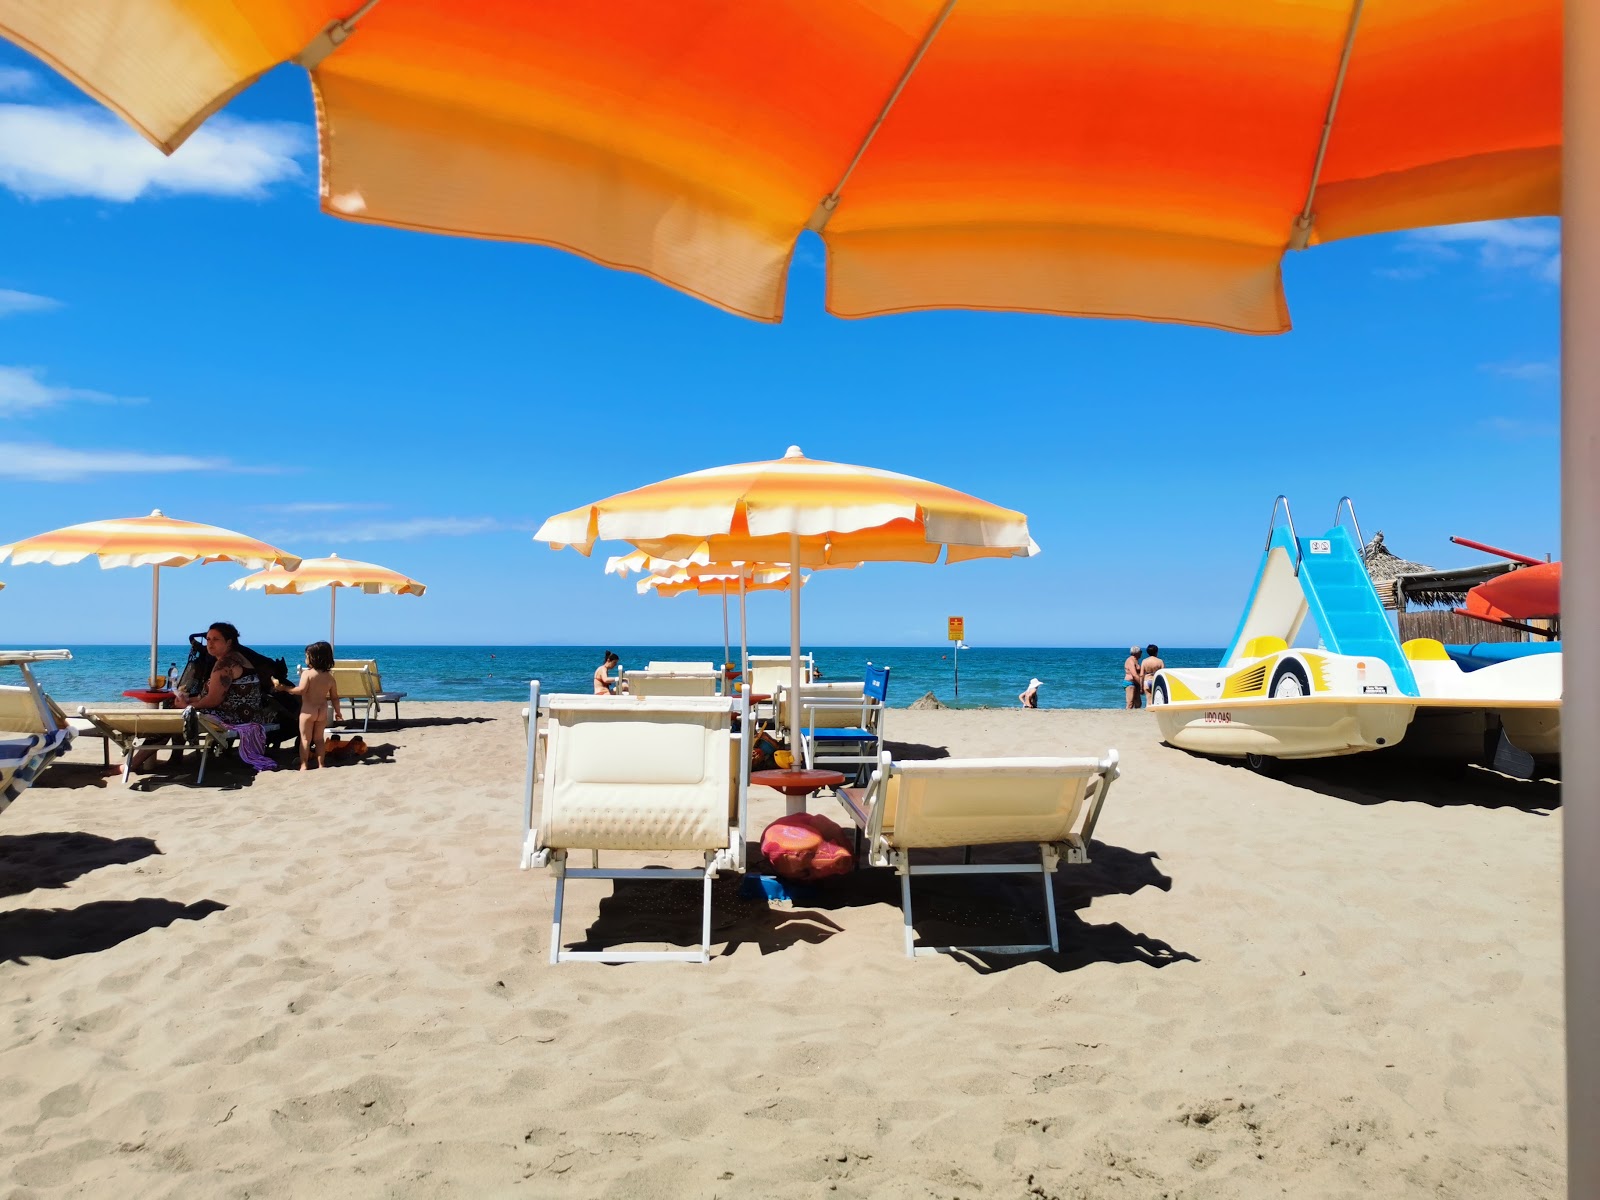 Foto af Spiaggia Principina a Mare - populært sted blandt afslapningskendere